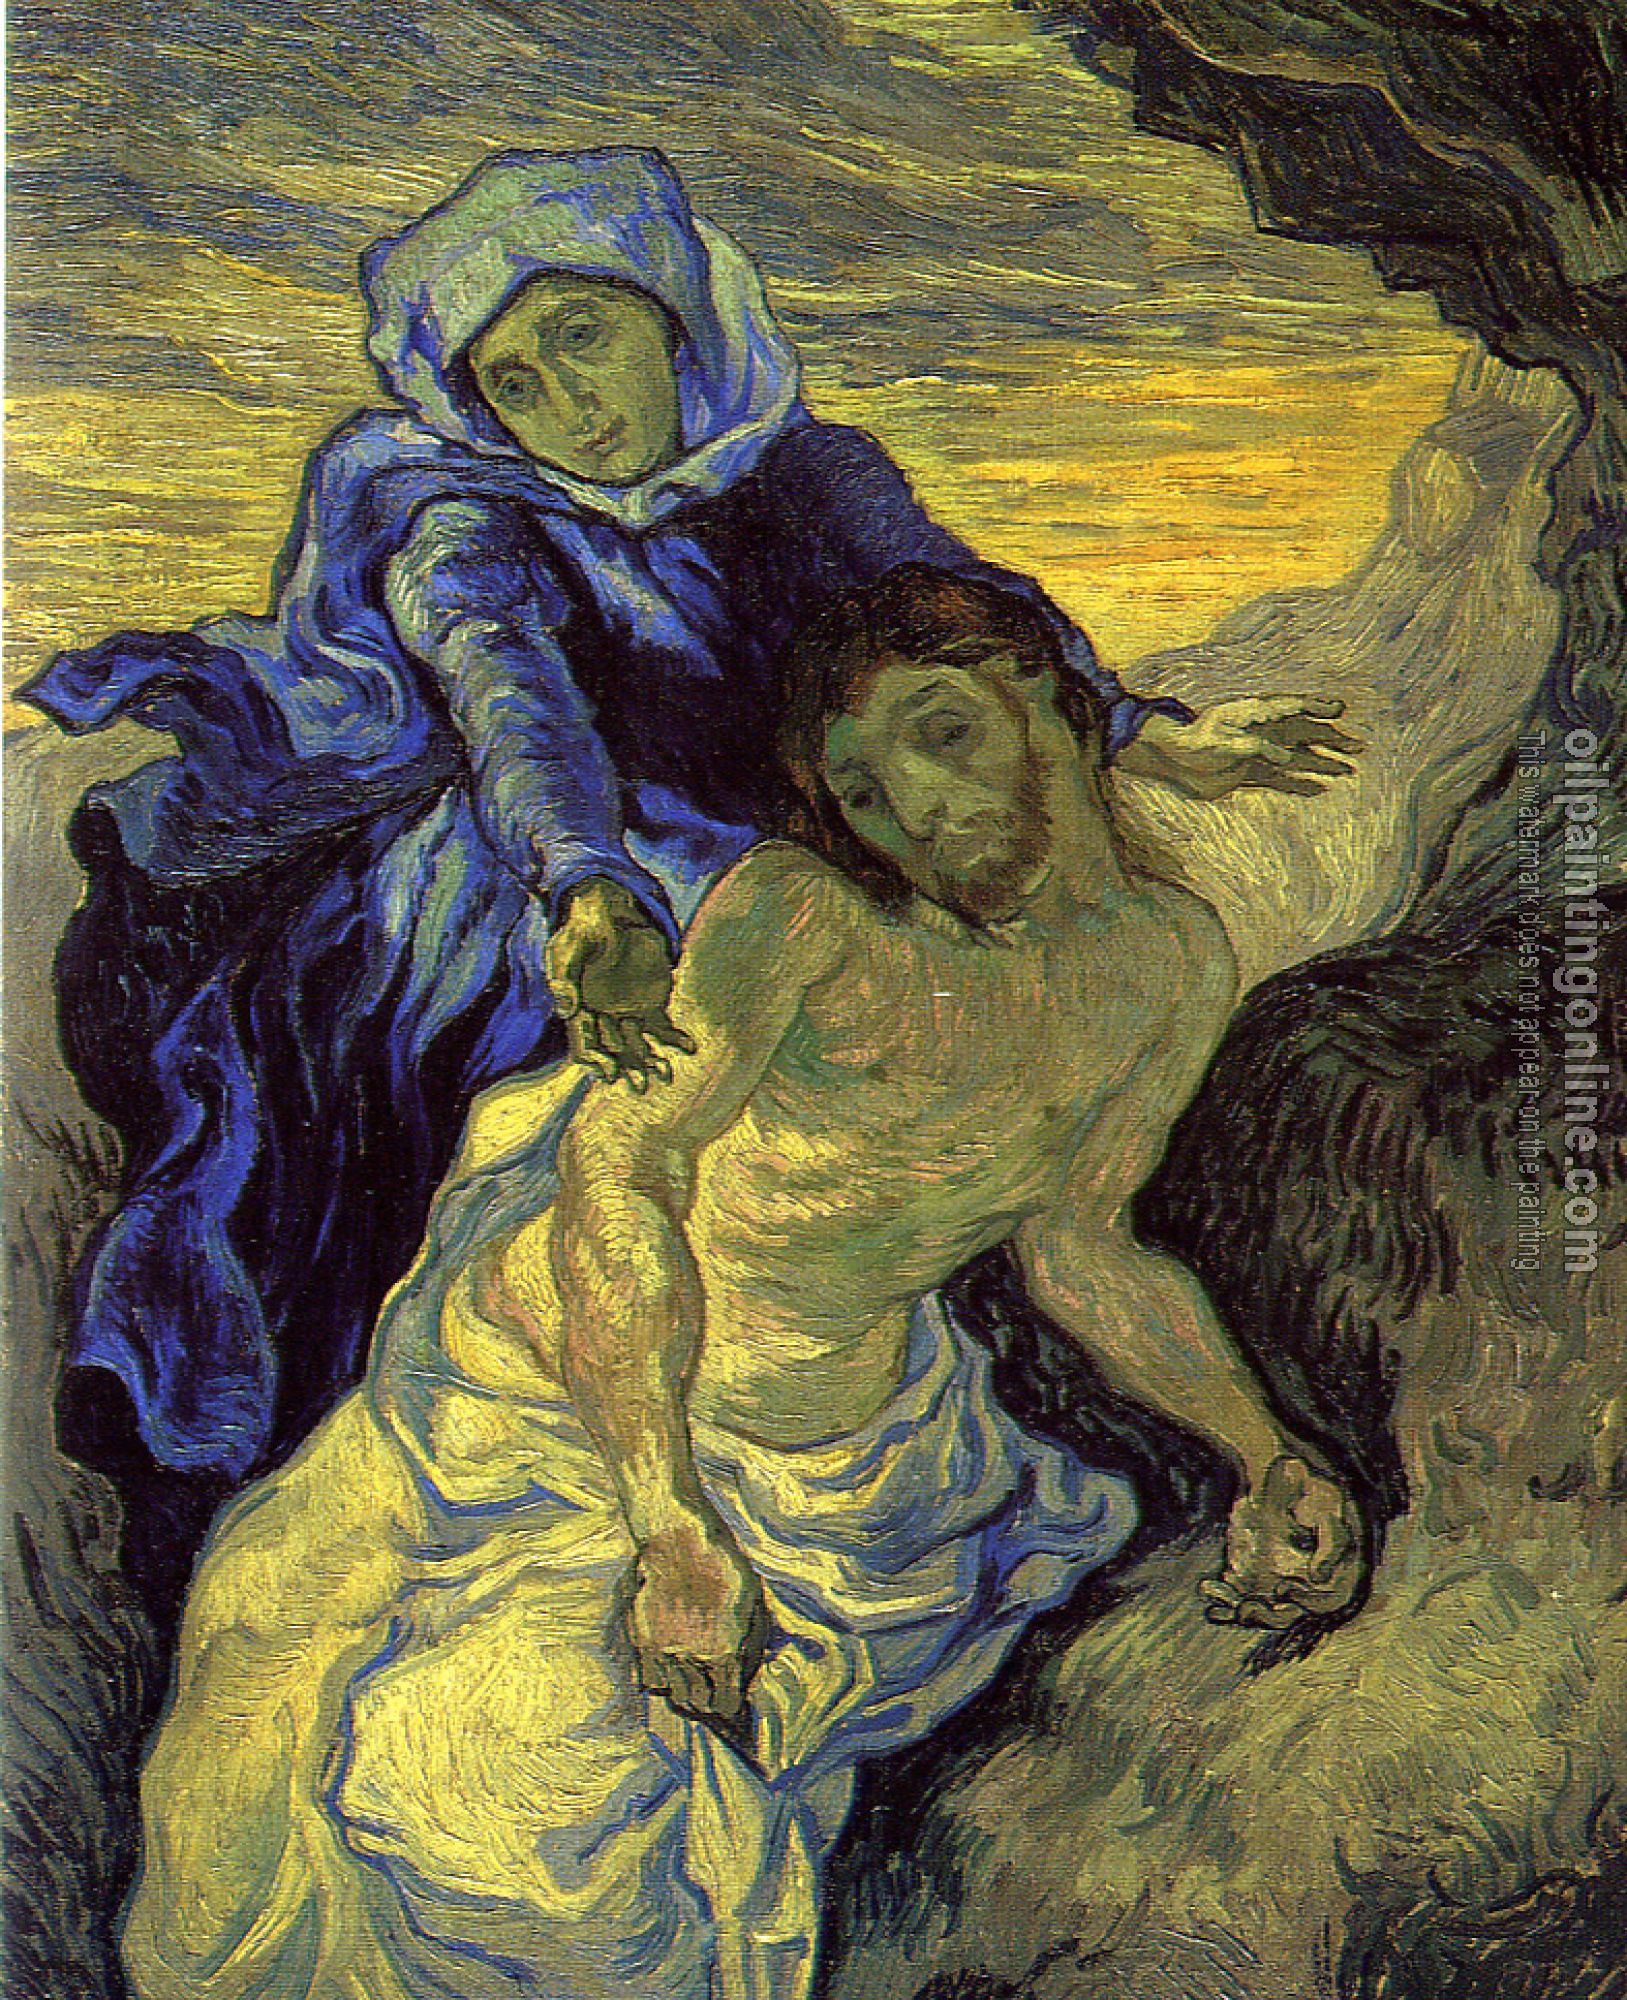 Gogh, Vincent van - Pieta(after Delacroix)